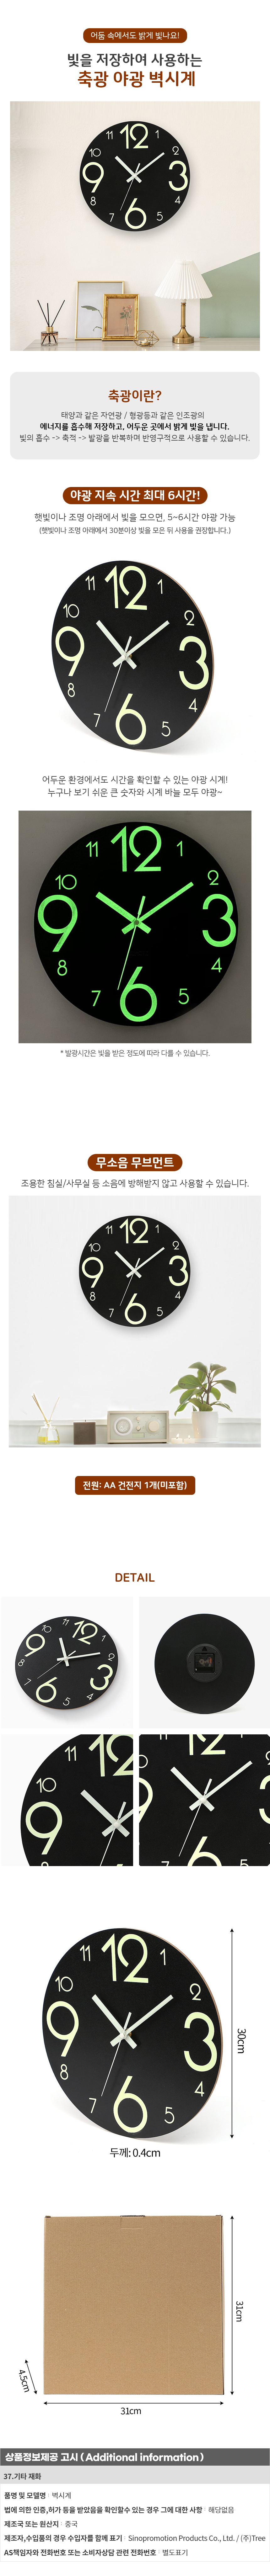 야광 원형 벽시계 30cm 병원 로고 인쇄 벽걸이 시계